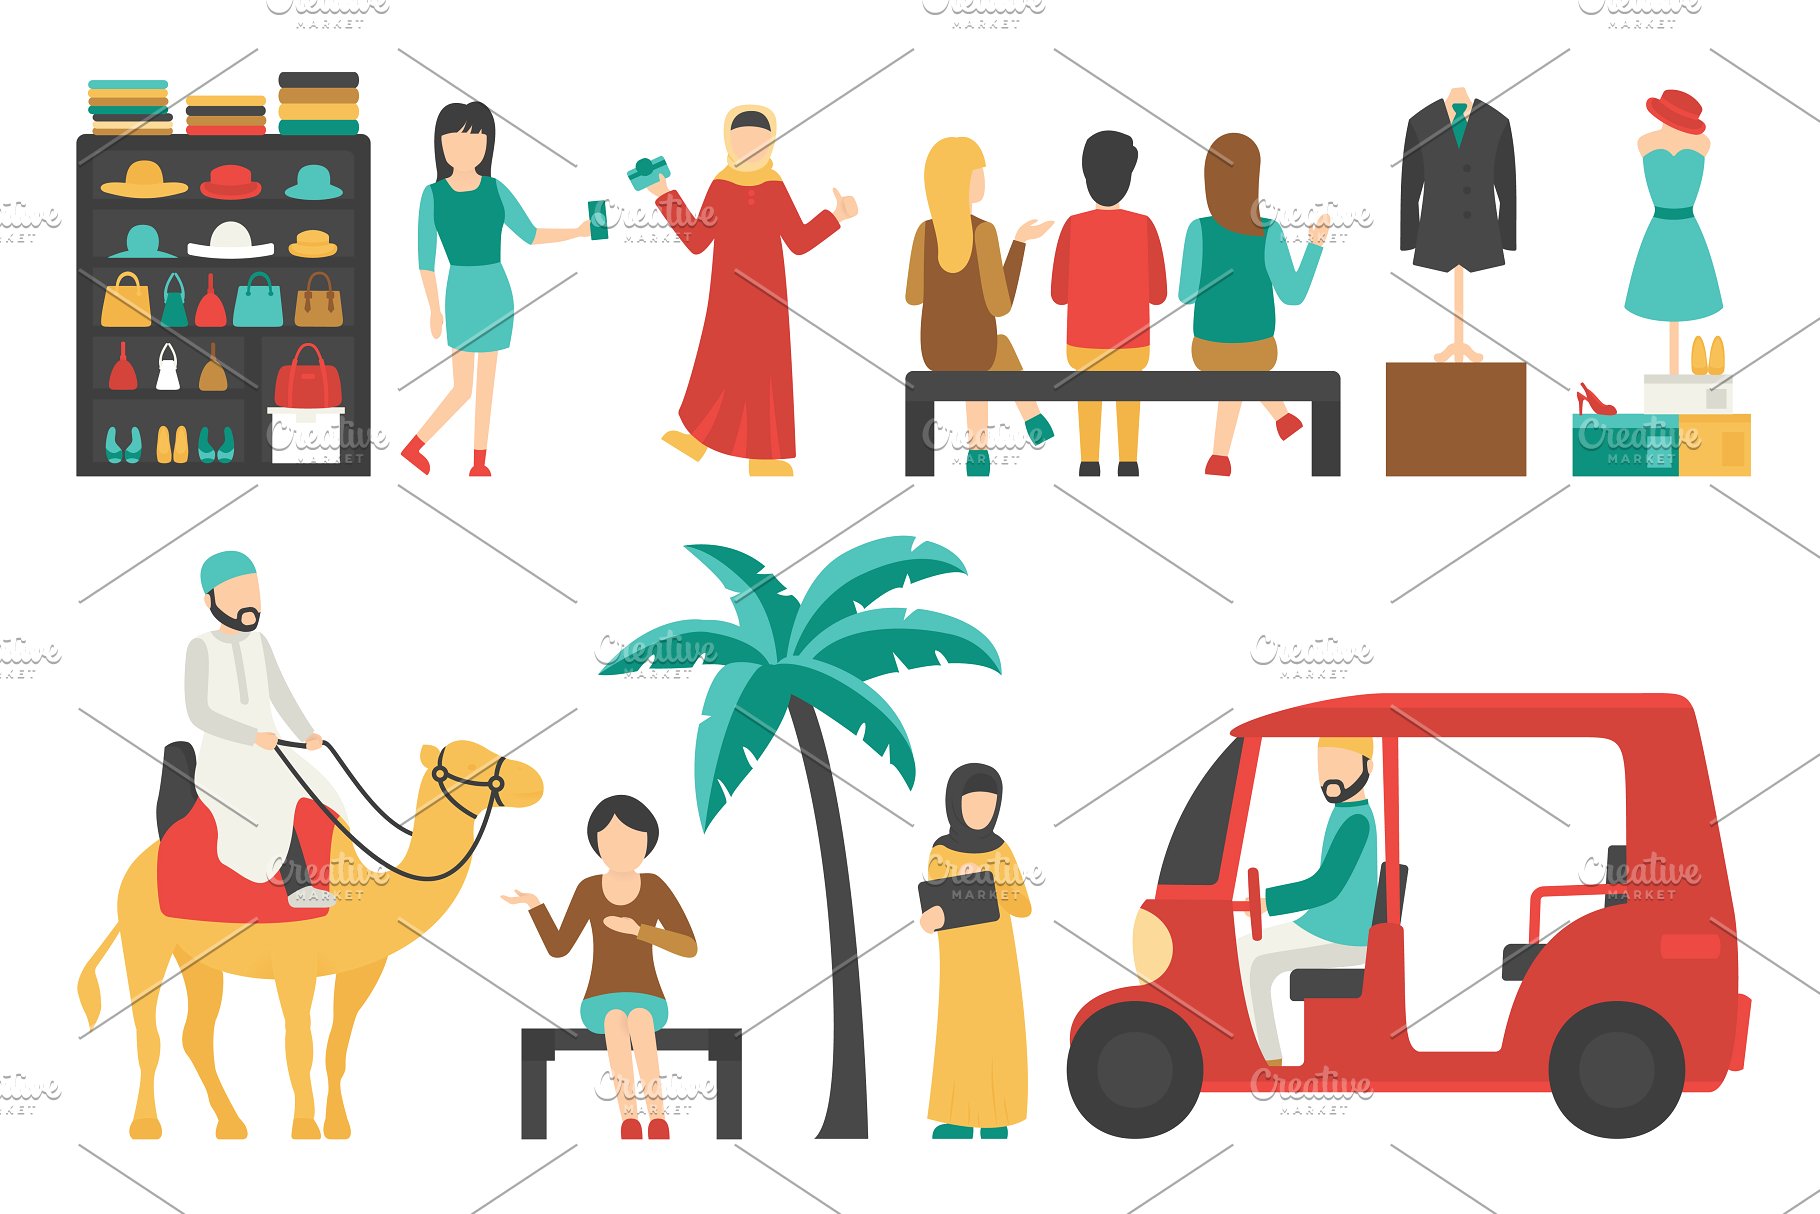 迪拜人物风情扁平化设计插画 Dubai – flat people set插图(3)